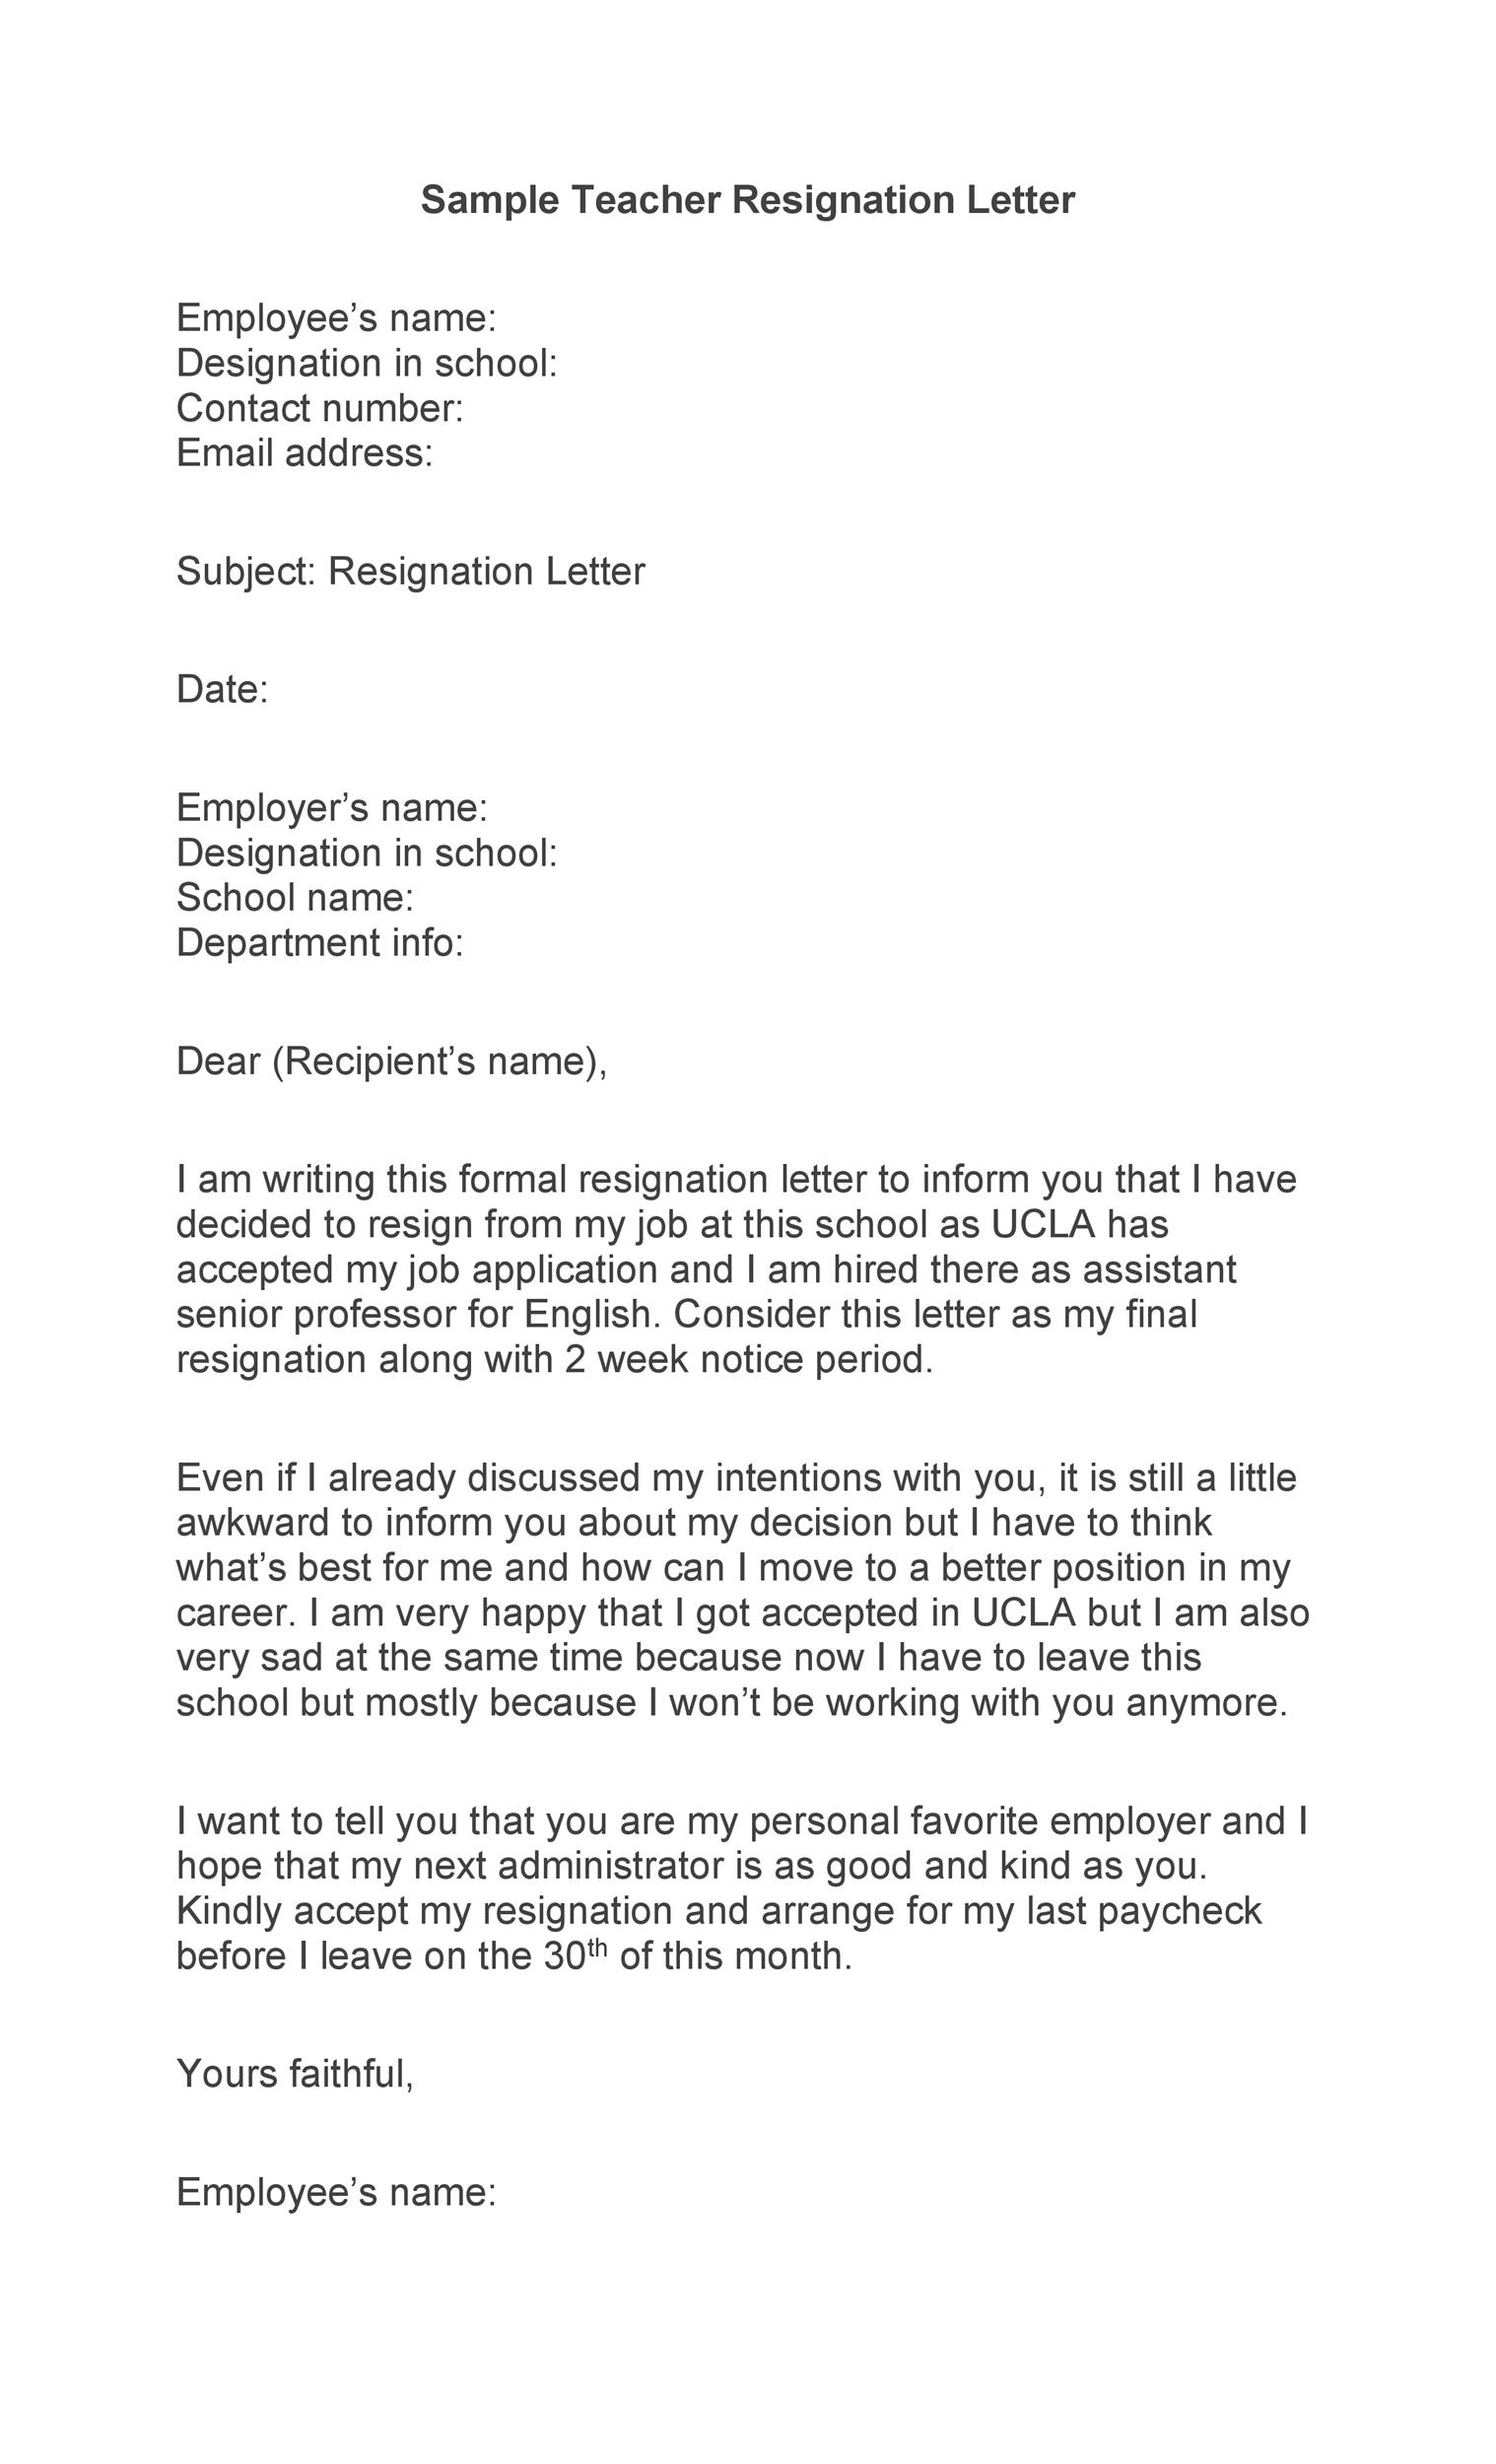 Free teacher resignation letter 18